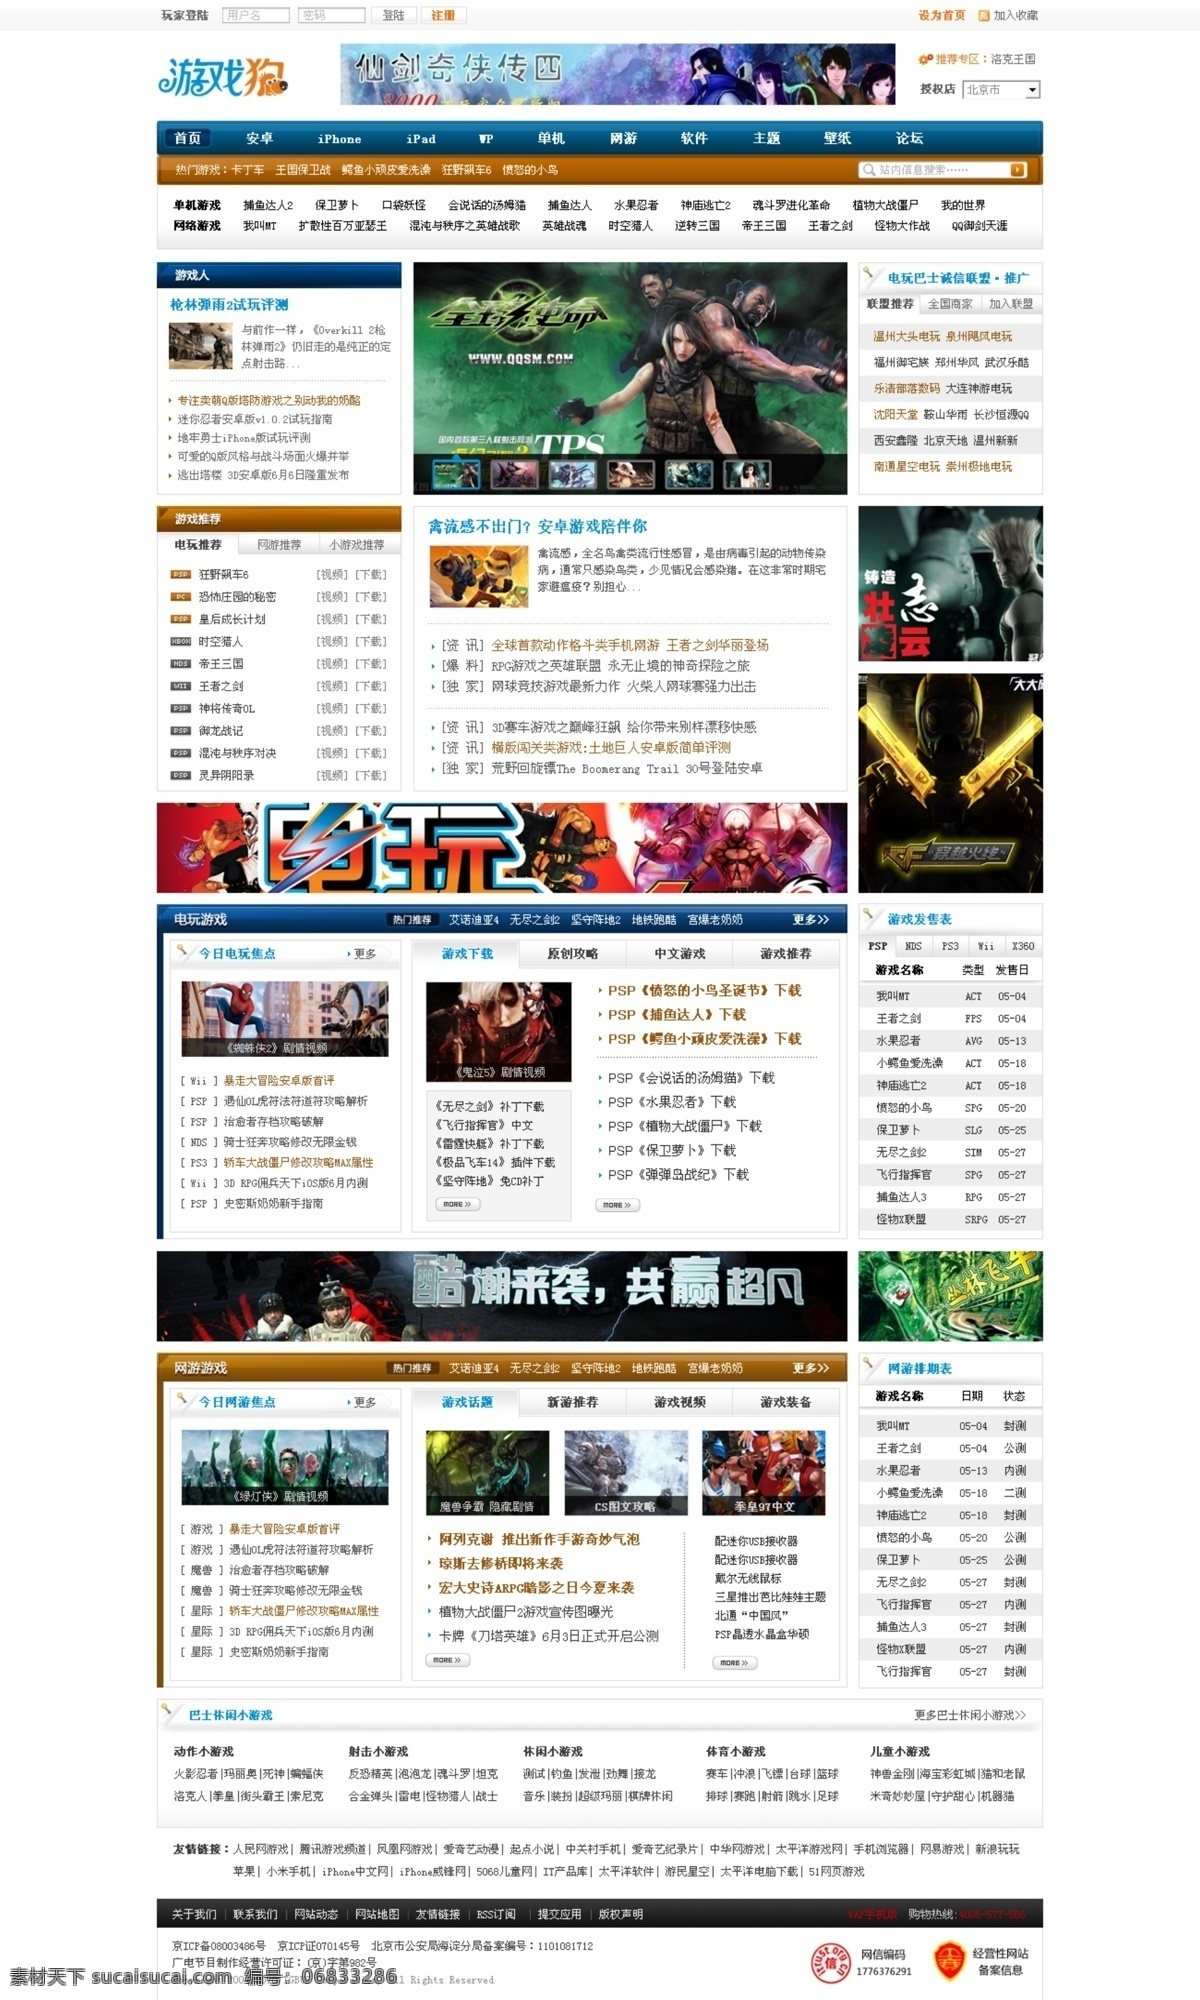 门户 网页模板 网站 游戏 游戏网站 源文件 中文模板 模板下载 游戏门户 游戏下载 网页素材